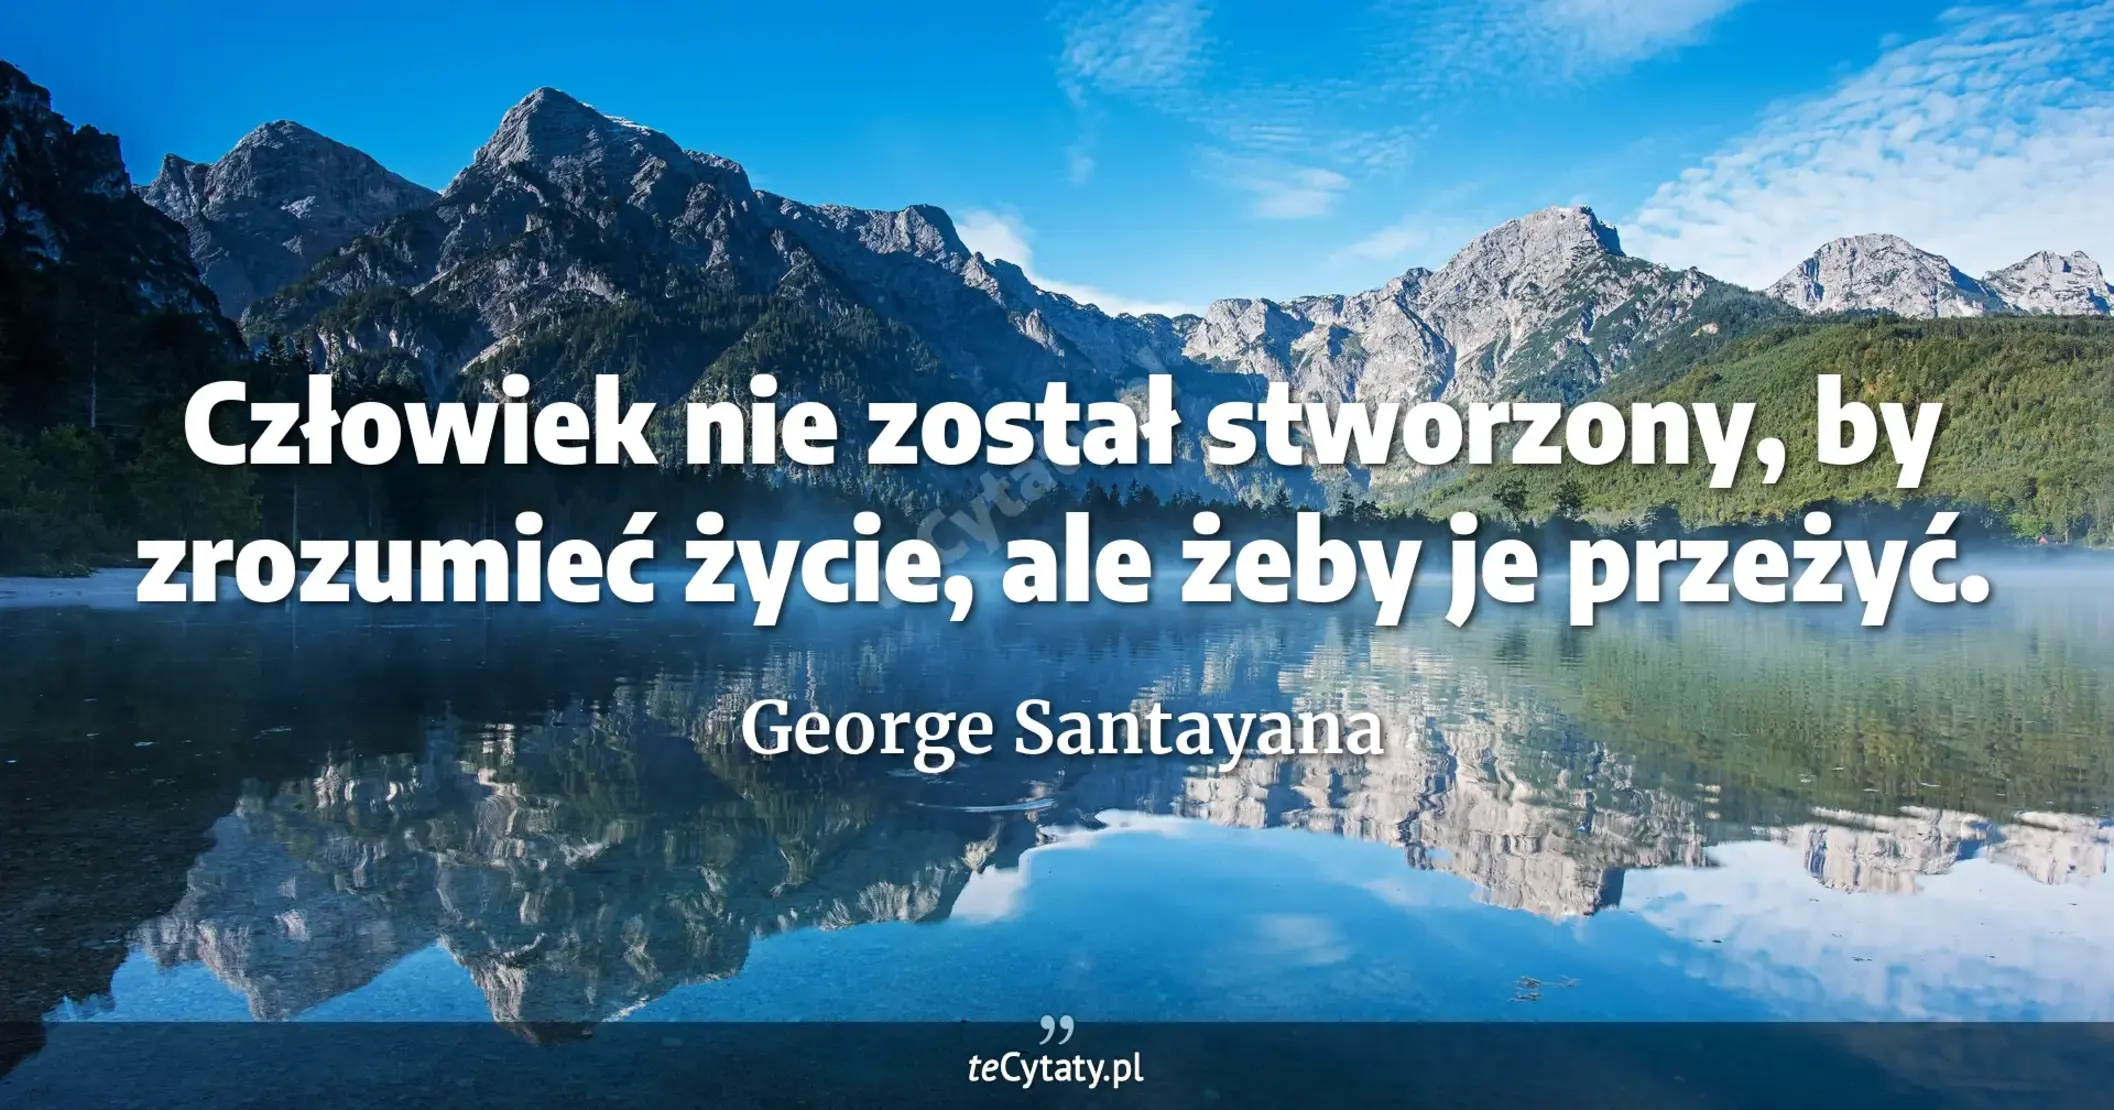 Człowiek nie został stworzony, by zrozumieć życie, ale żeby je przeżyć. - George Santayana